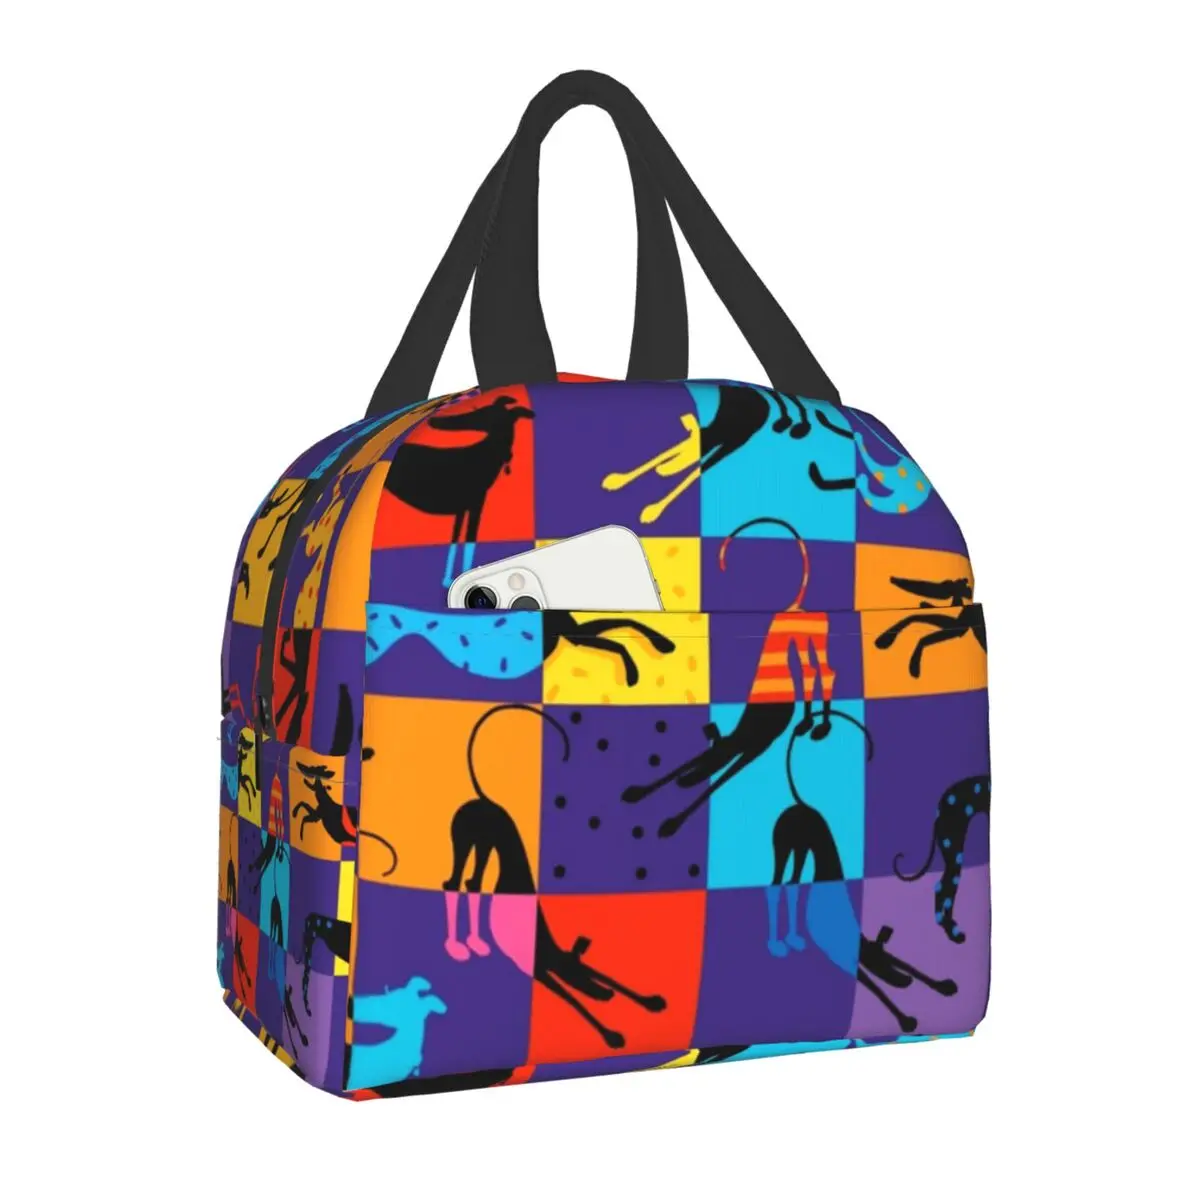 Hounds Greyhound Собака Термоизолированные сумки для ланча Женские животные в стиле поп-арт Портативная сумка для ланча для школы, офиса, коробка для еды